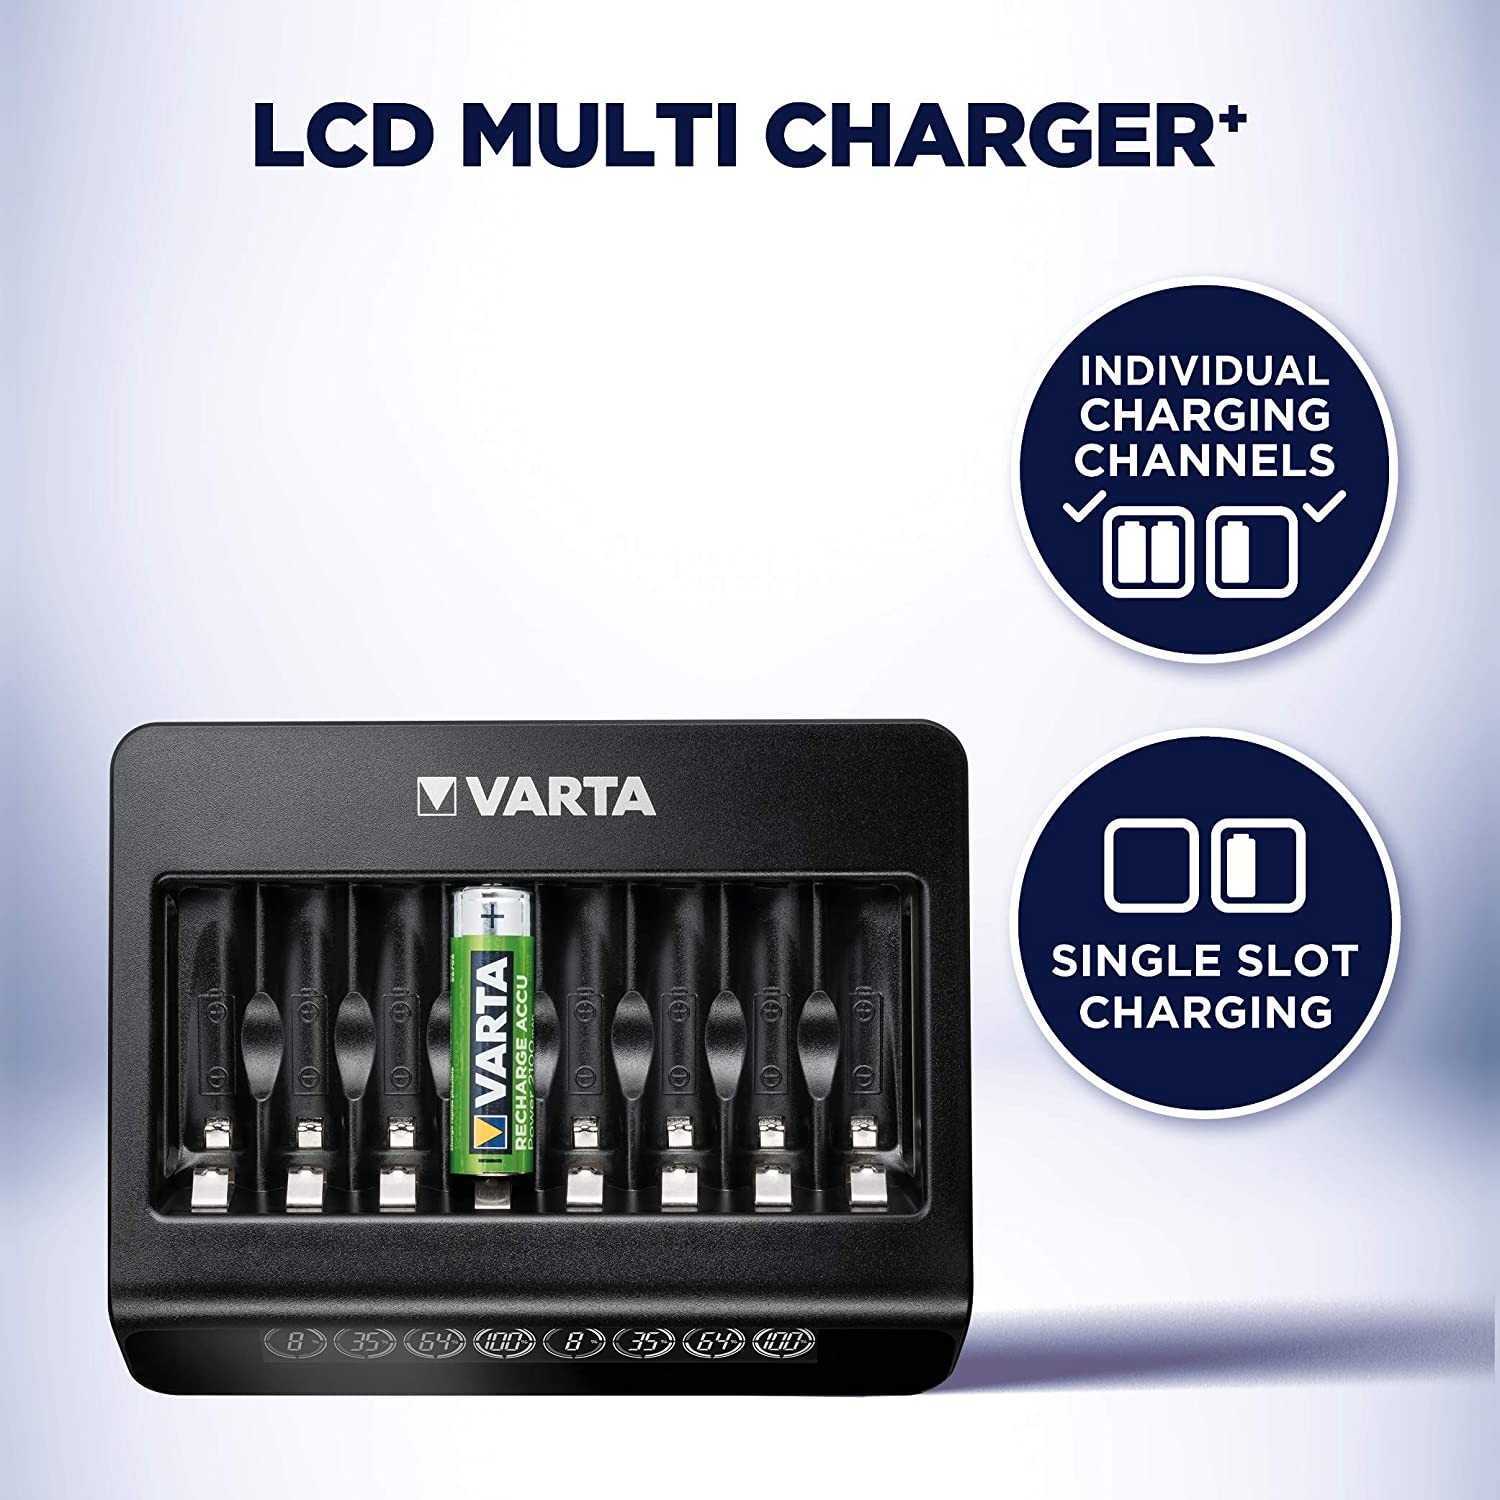 Зарядний пристрій Varta LCD Multi Charger Plus (57681101401) характеристики - фотографія 7